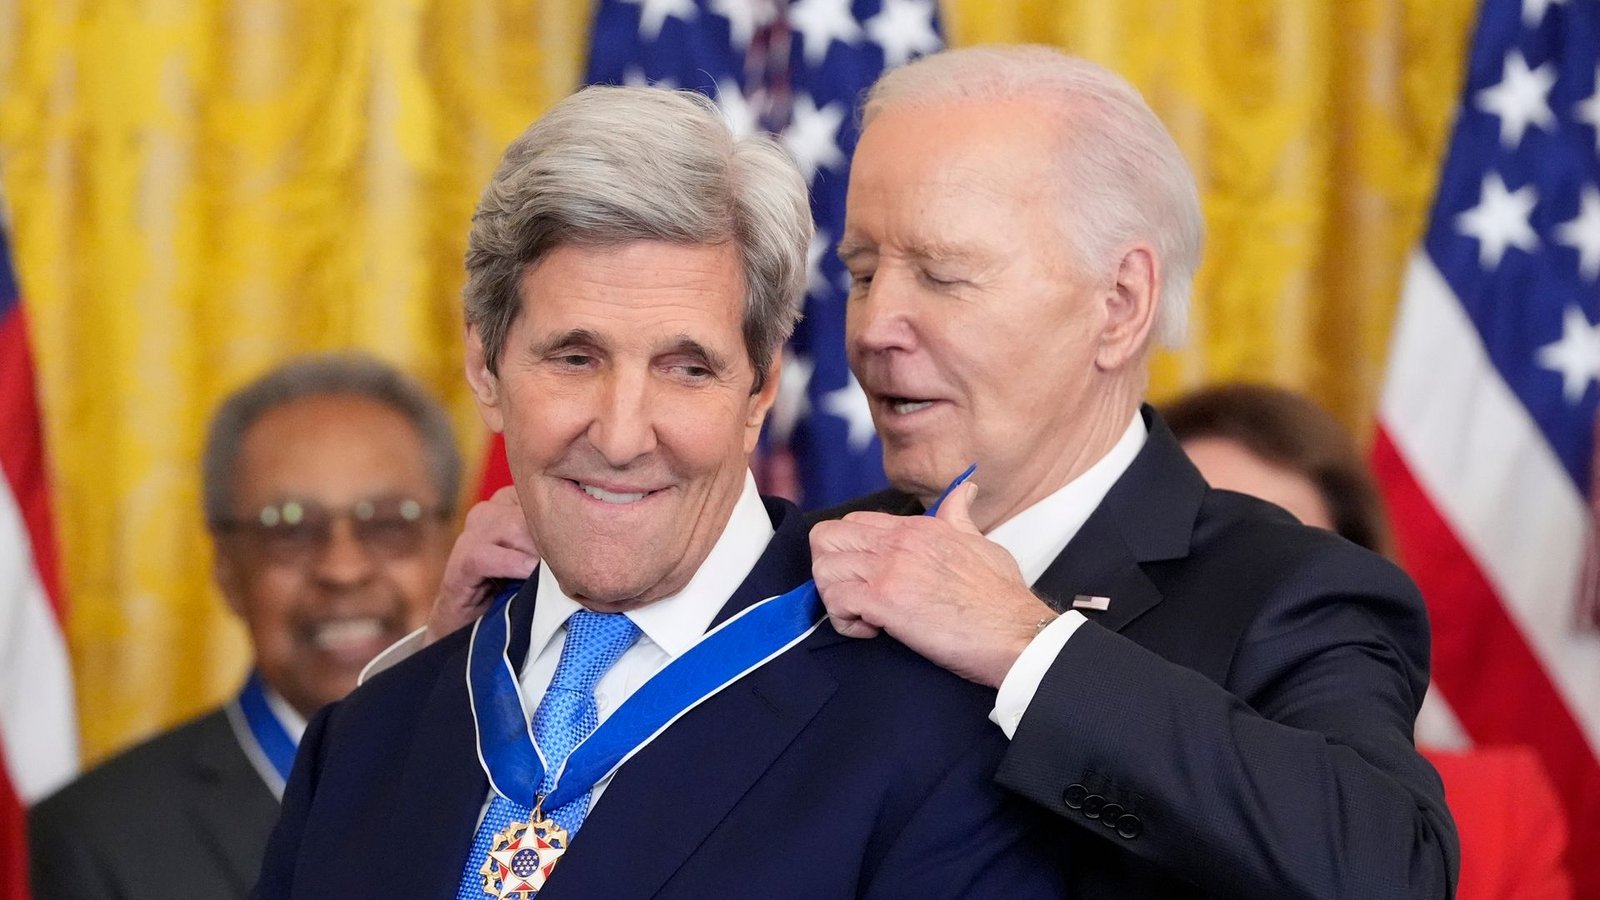 US-Präsident Joe Biden verleiht die höchste zivile Auszeichnung der Nation an den ehemaligen US-Außenminister John Kerry.Foto: Alex Brandon/AP/dpa